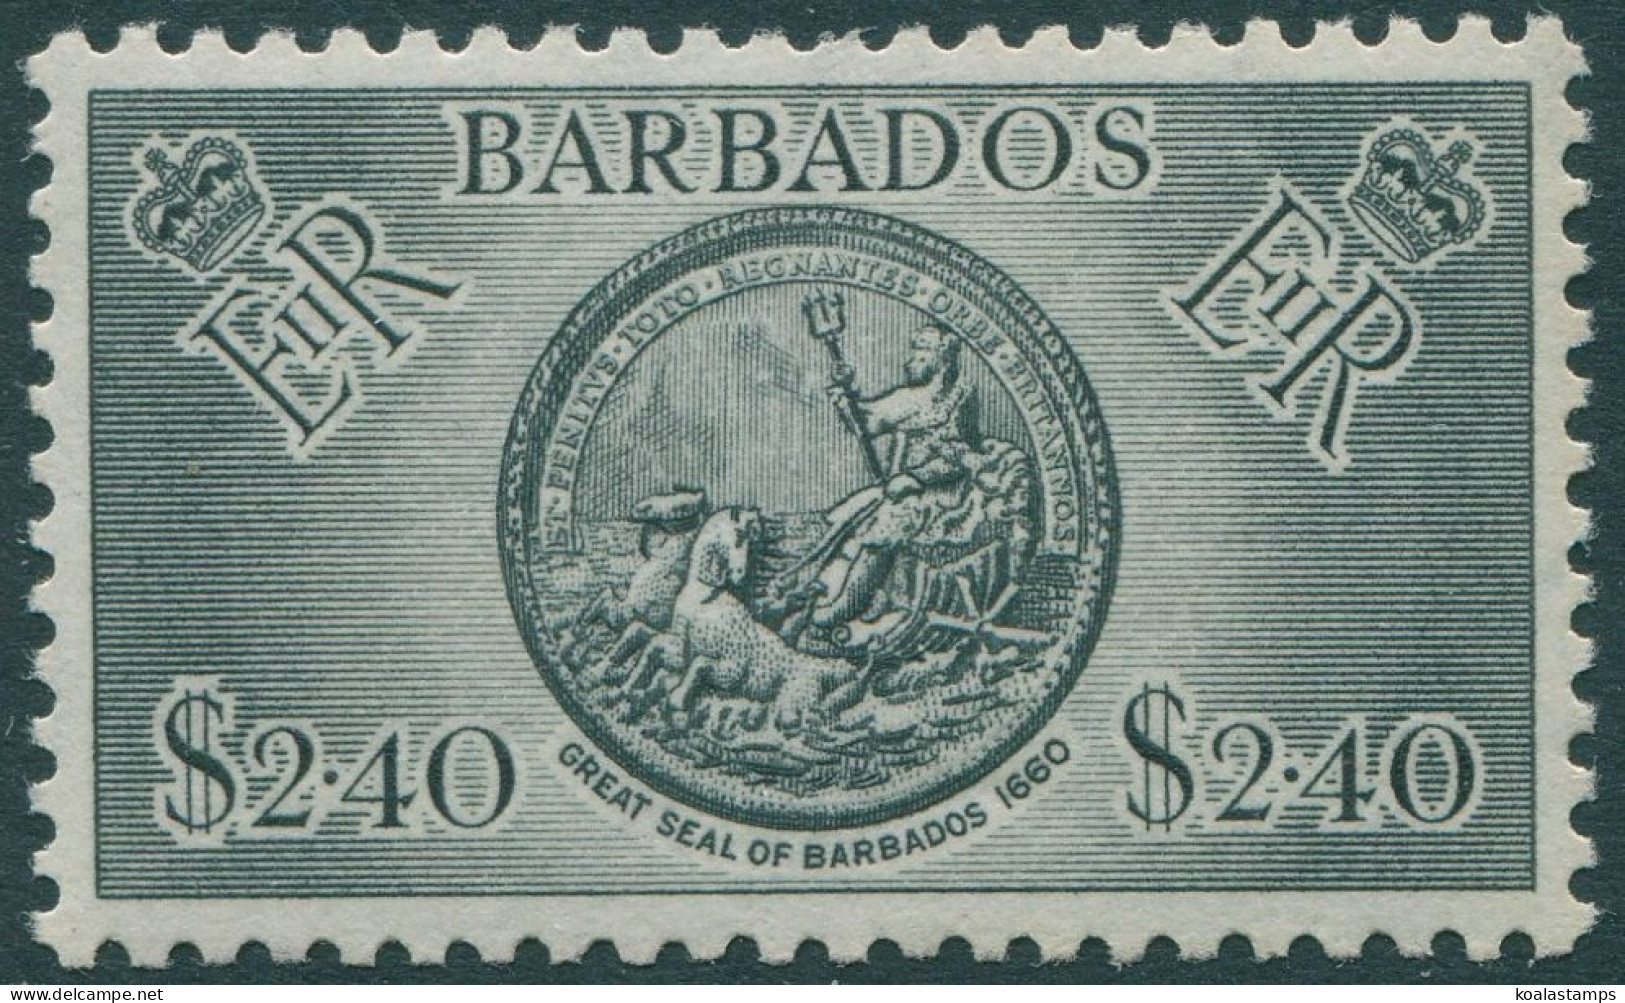 Barbados 1950 SG282 $2.40 Black Great Seal MNH - Barbados (1966-...)